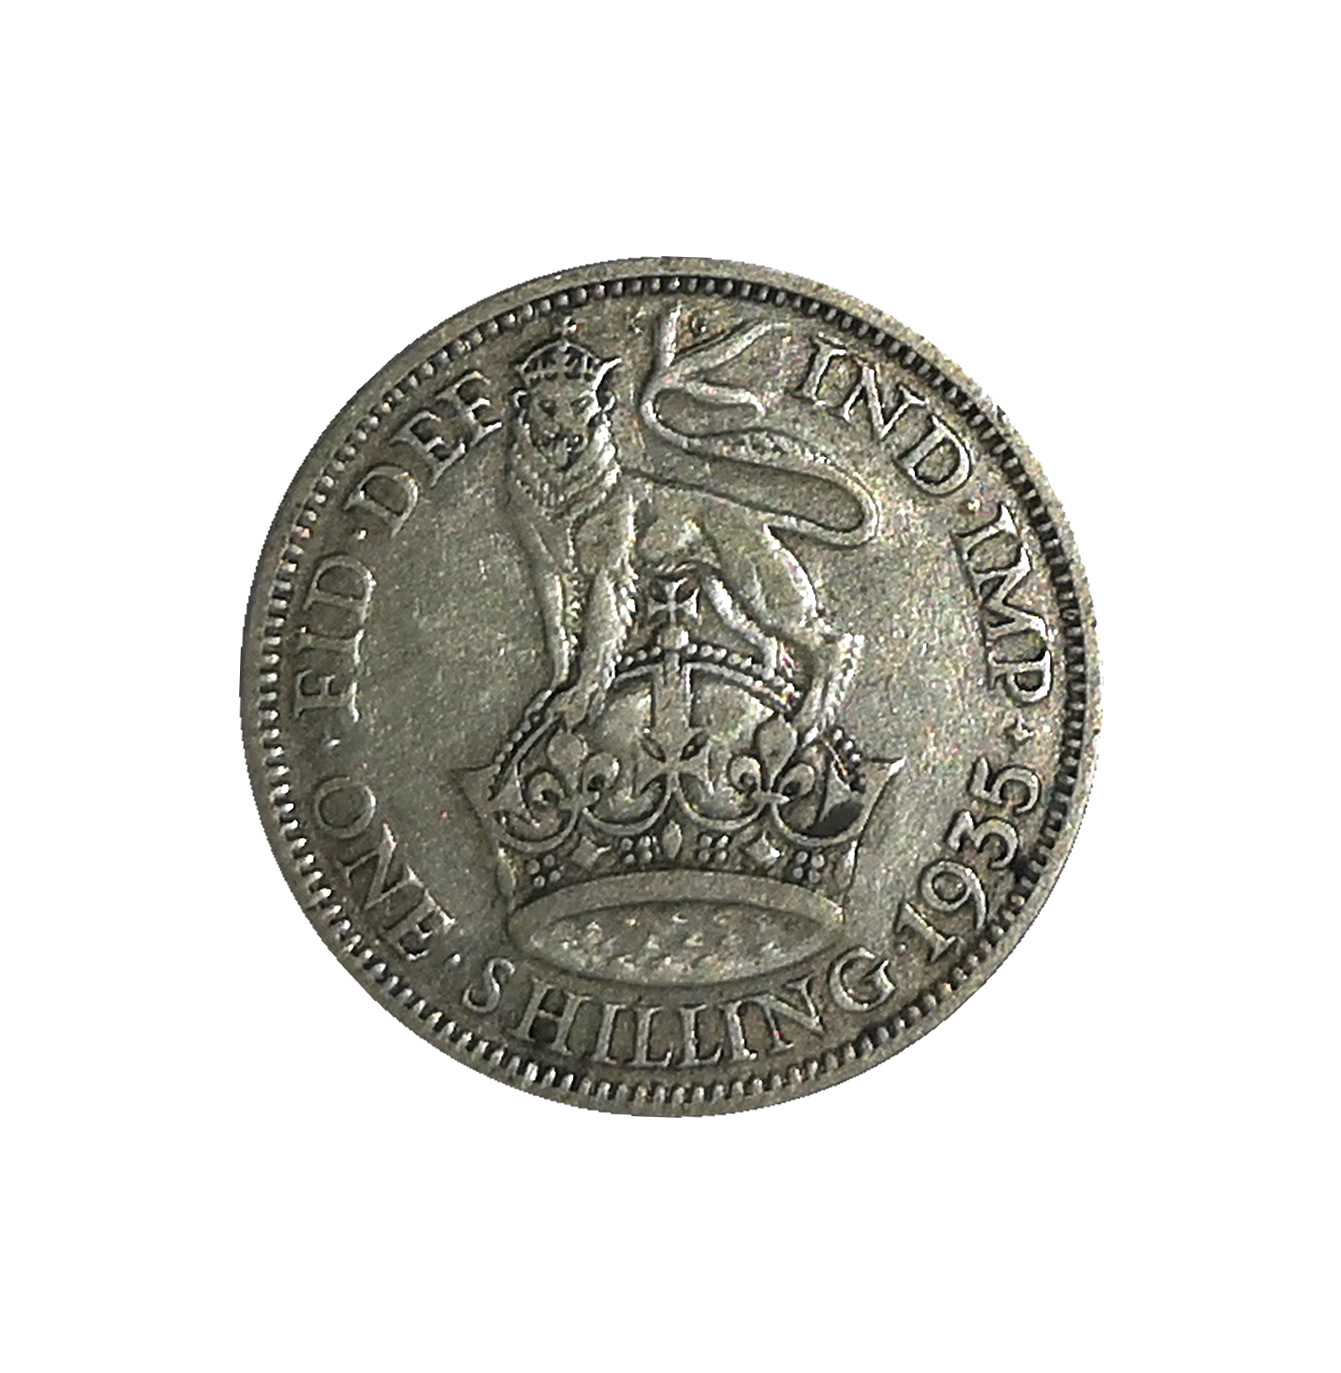 1935 King George V Shilling